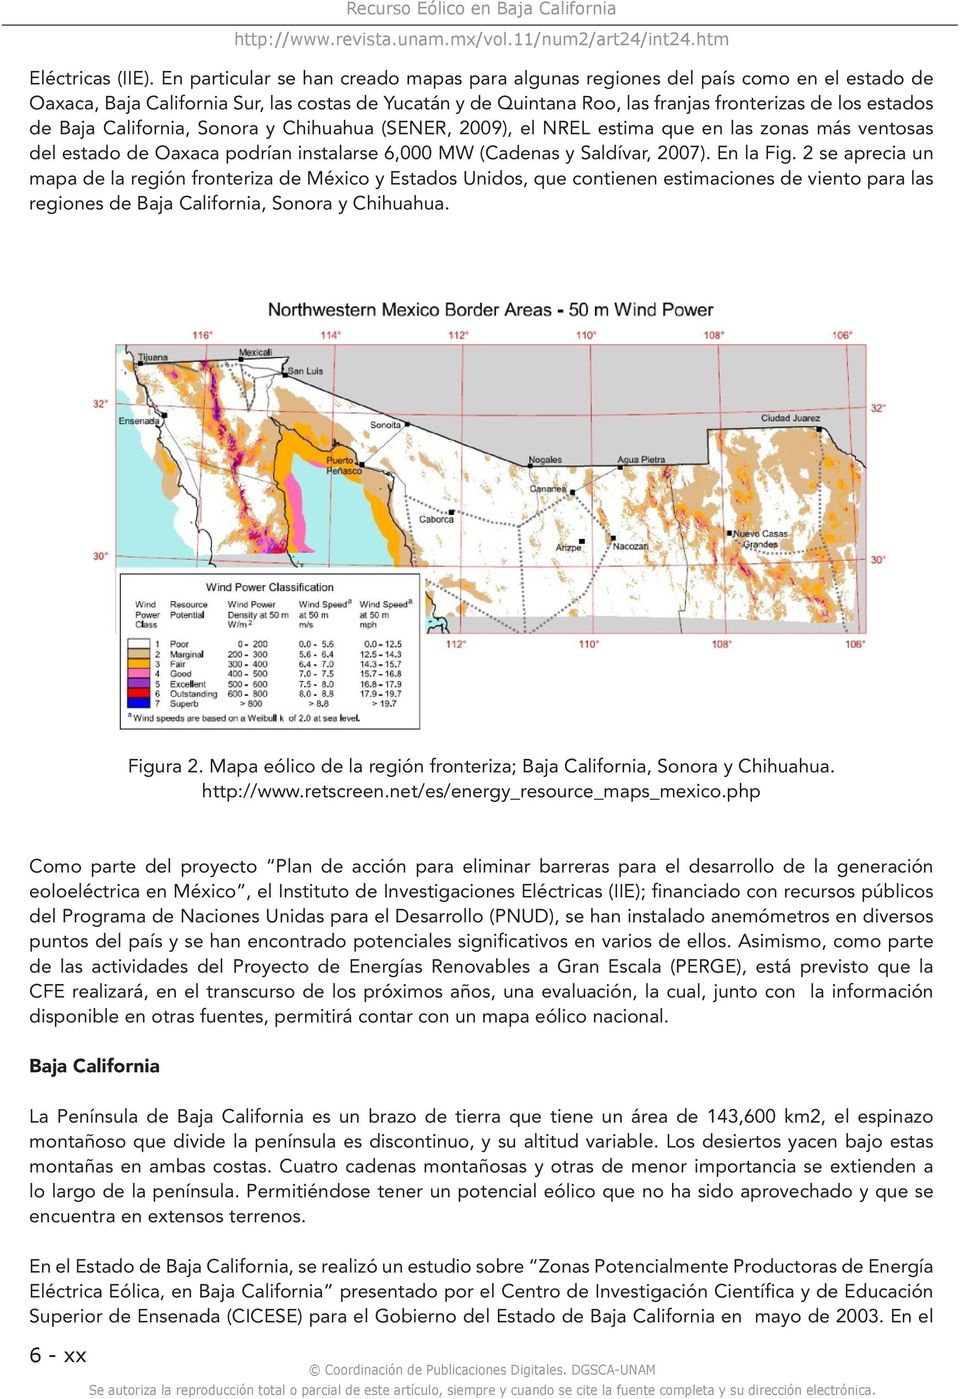 Baja California, Sonora y Chihuahua (SENER, 2009), el NREL estima que en las zonas más ventosas del estado de Oaxaca podrían instalarse 6,000 MW (Cadenas y Saldívar, 2007). En la Fig.